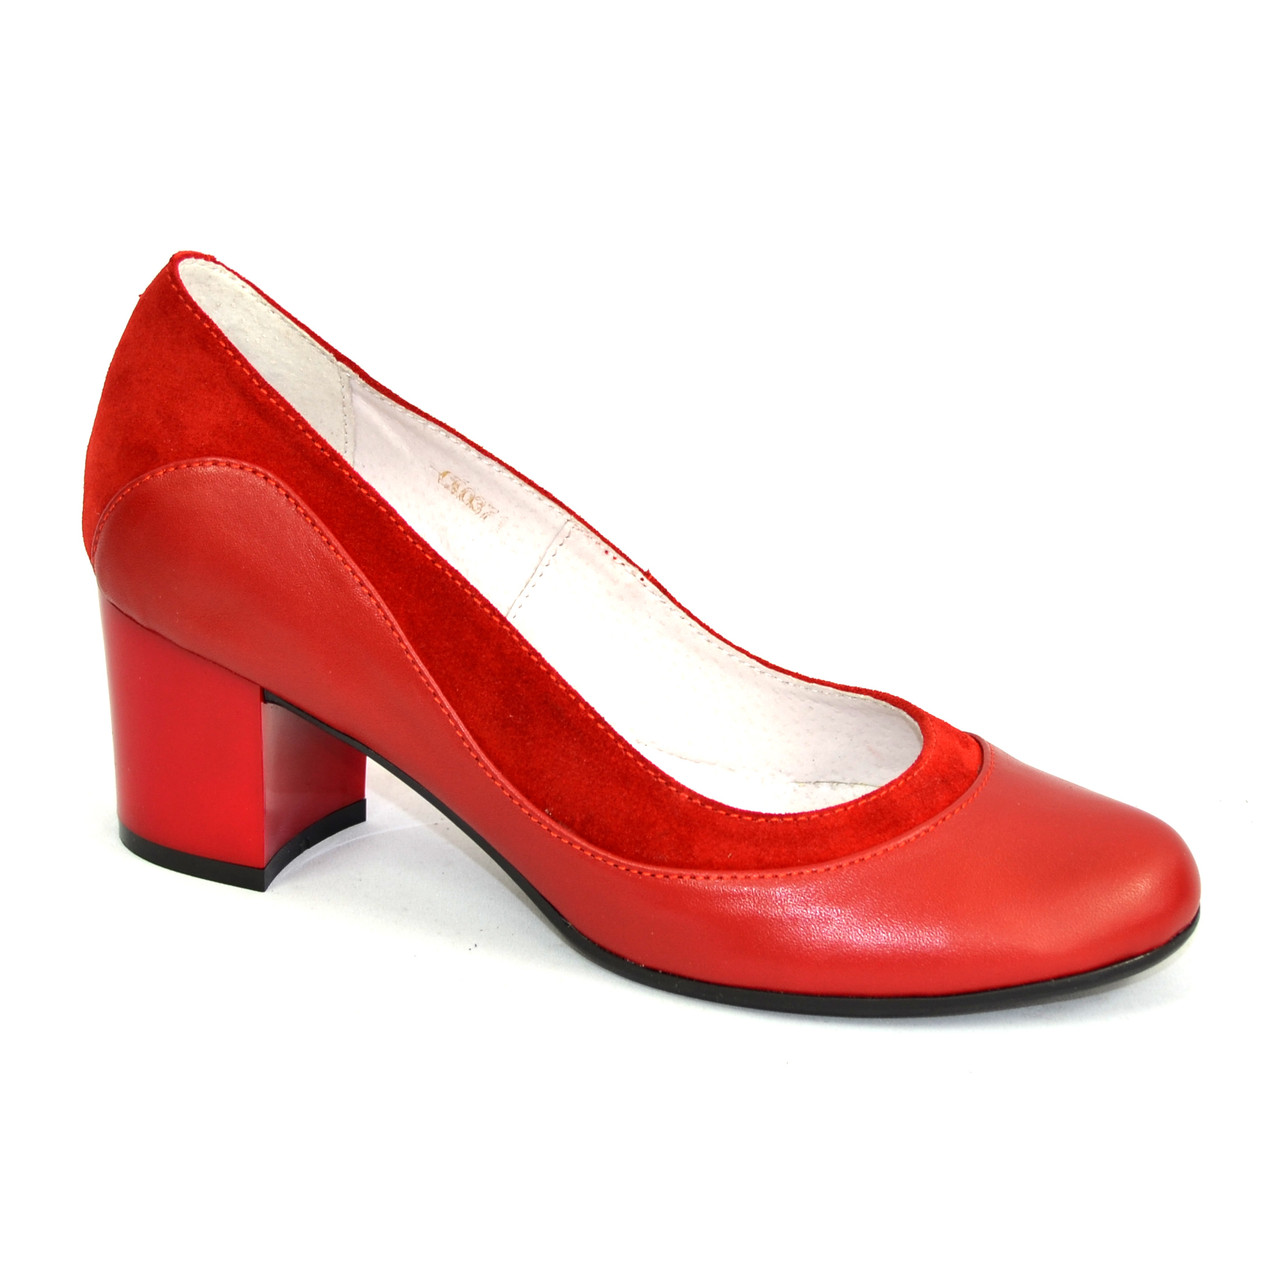 Вайлдберриз туфли женские кожаные на каблуках. Туфли женские красные. Красные туфли на невысоком каблуке. Женские туфли на низком каблуке из натуральной кожи красные. Туфли женские на низком каблуке.